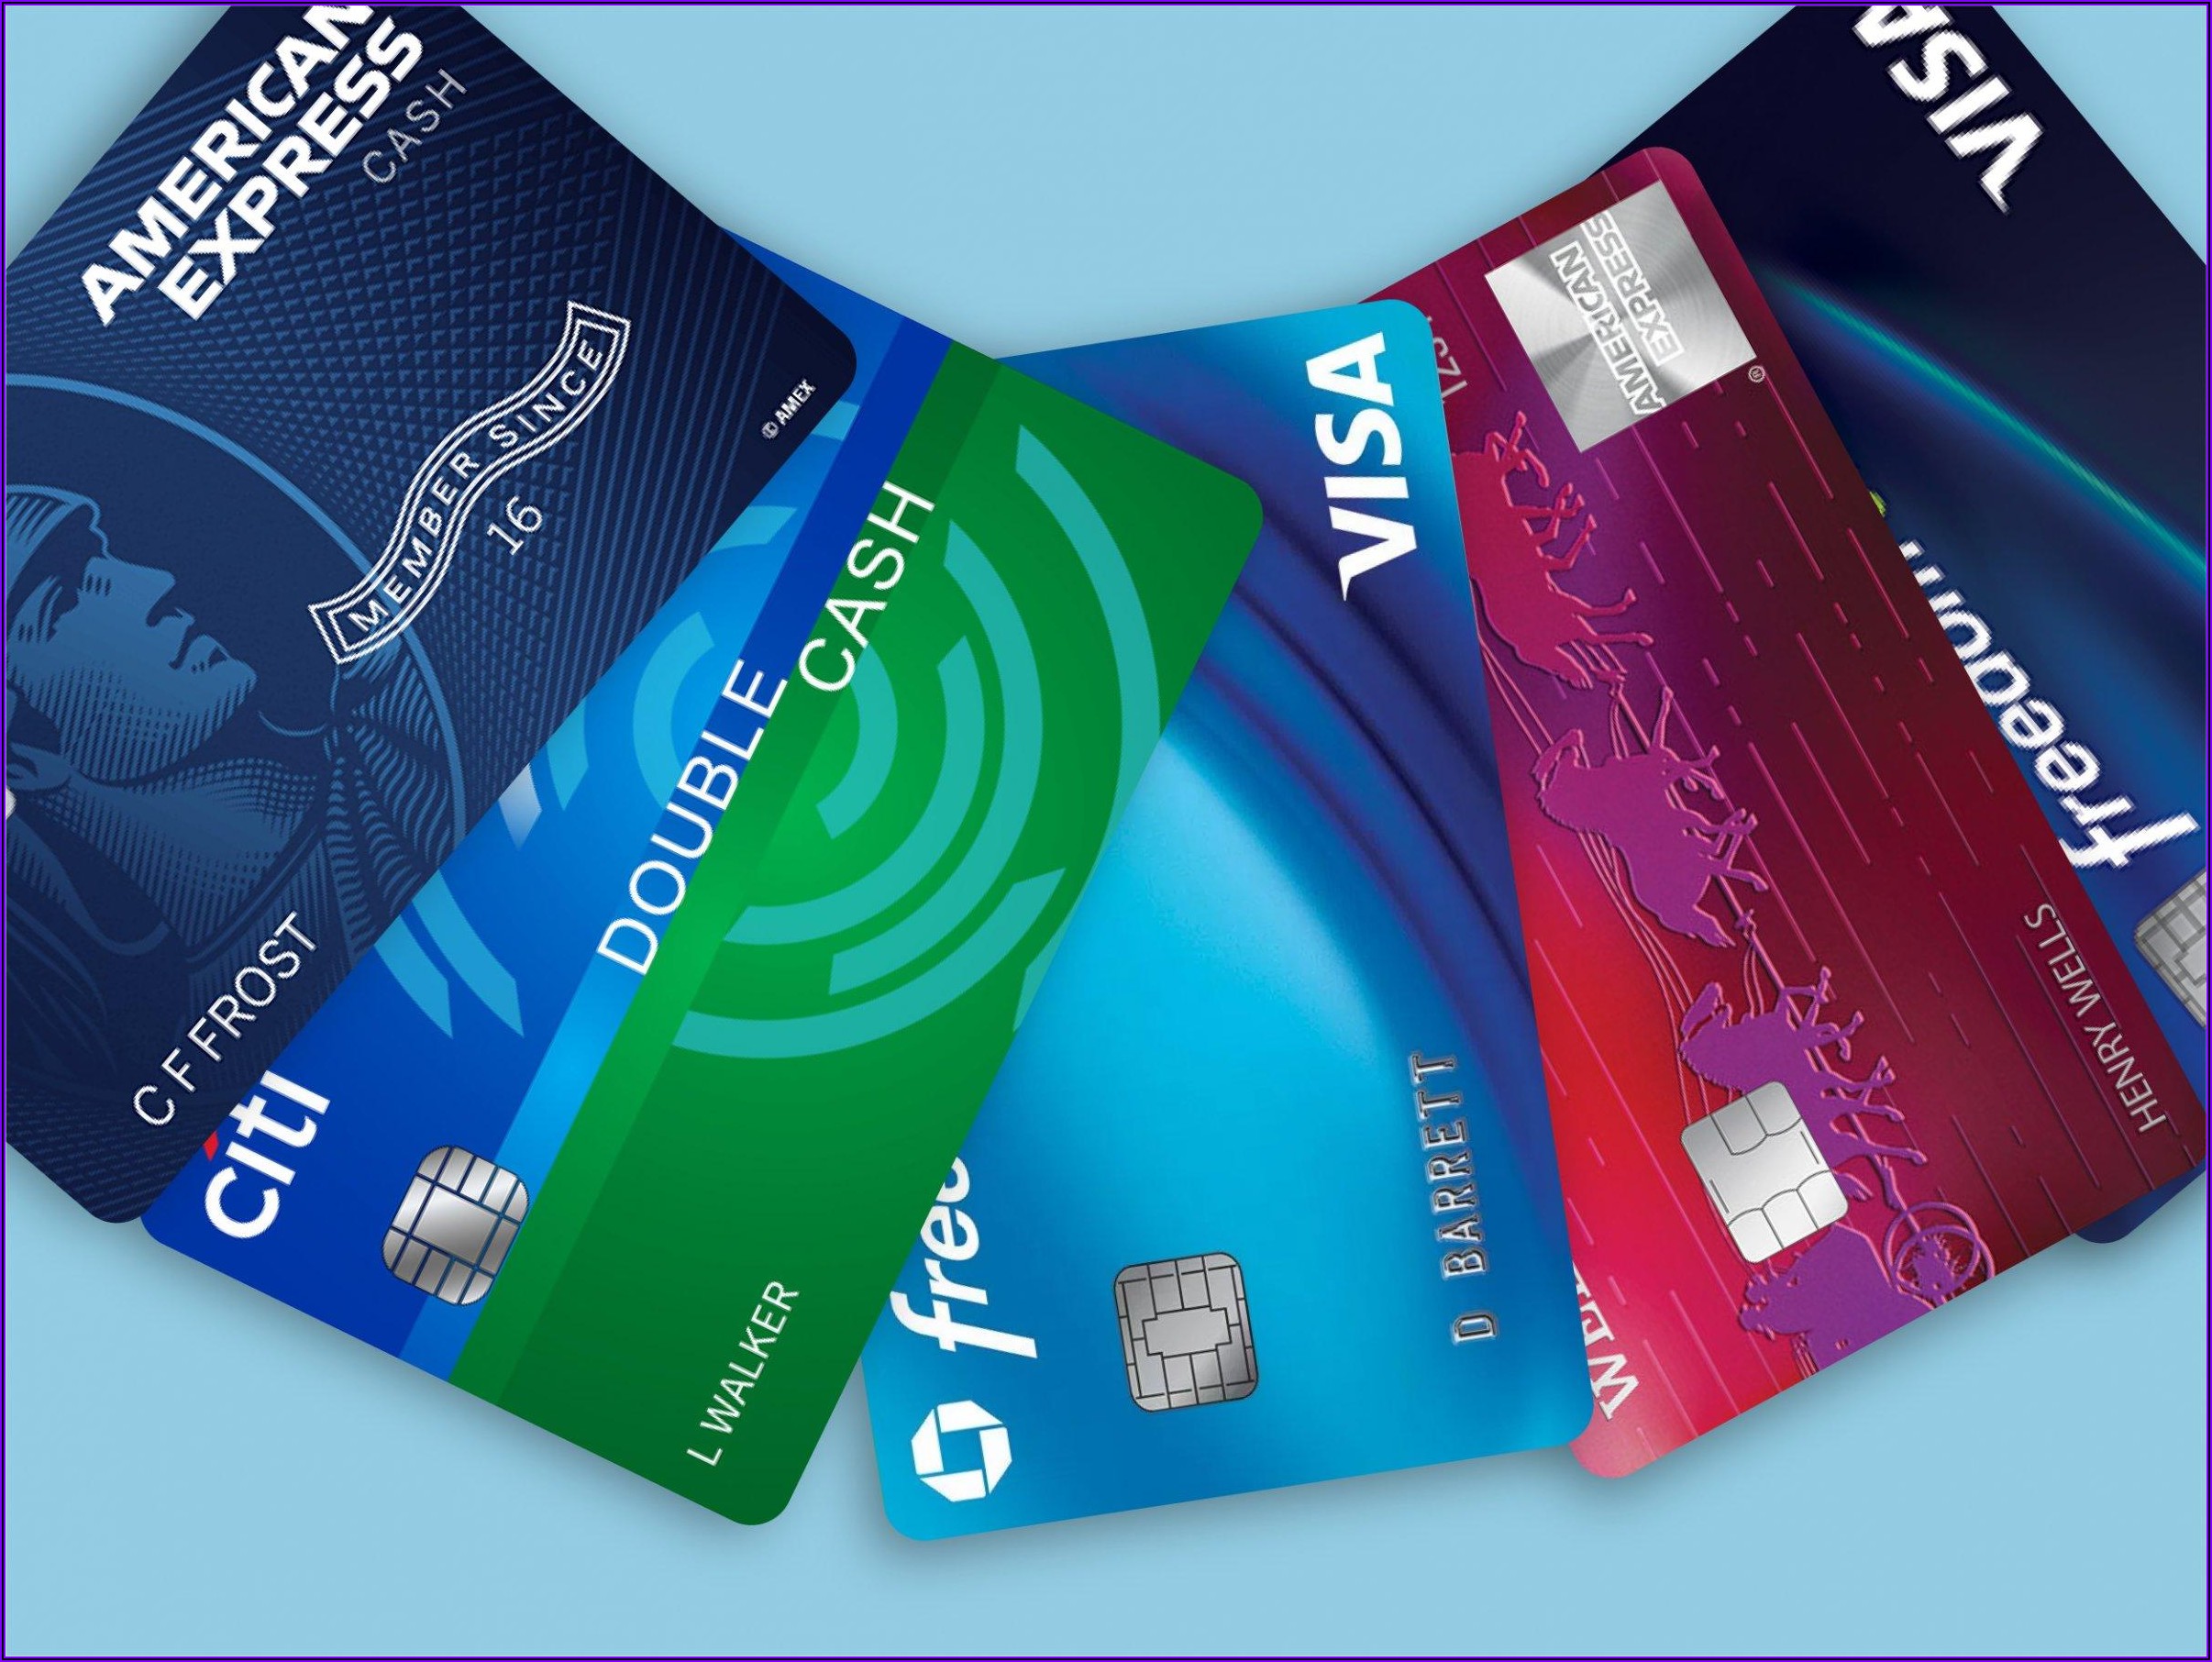 Best Cash Back Credit Cards For Business 2019